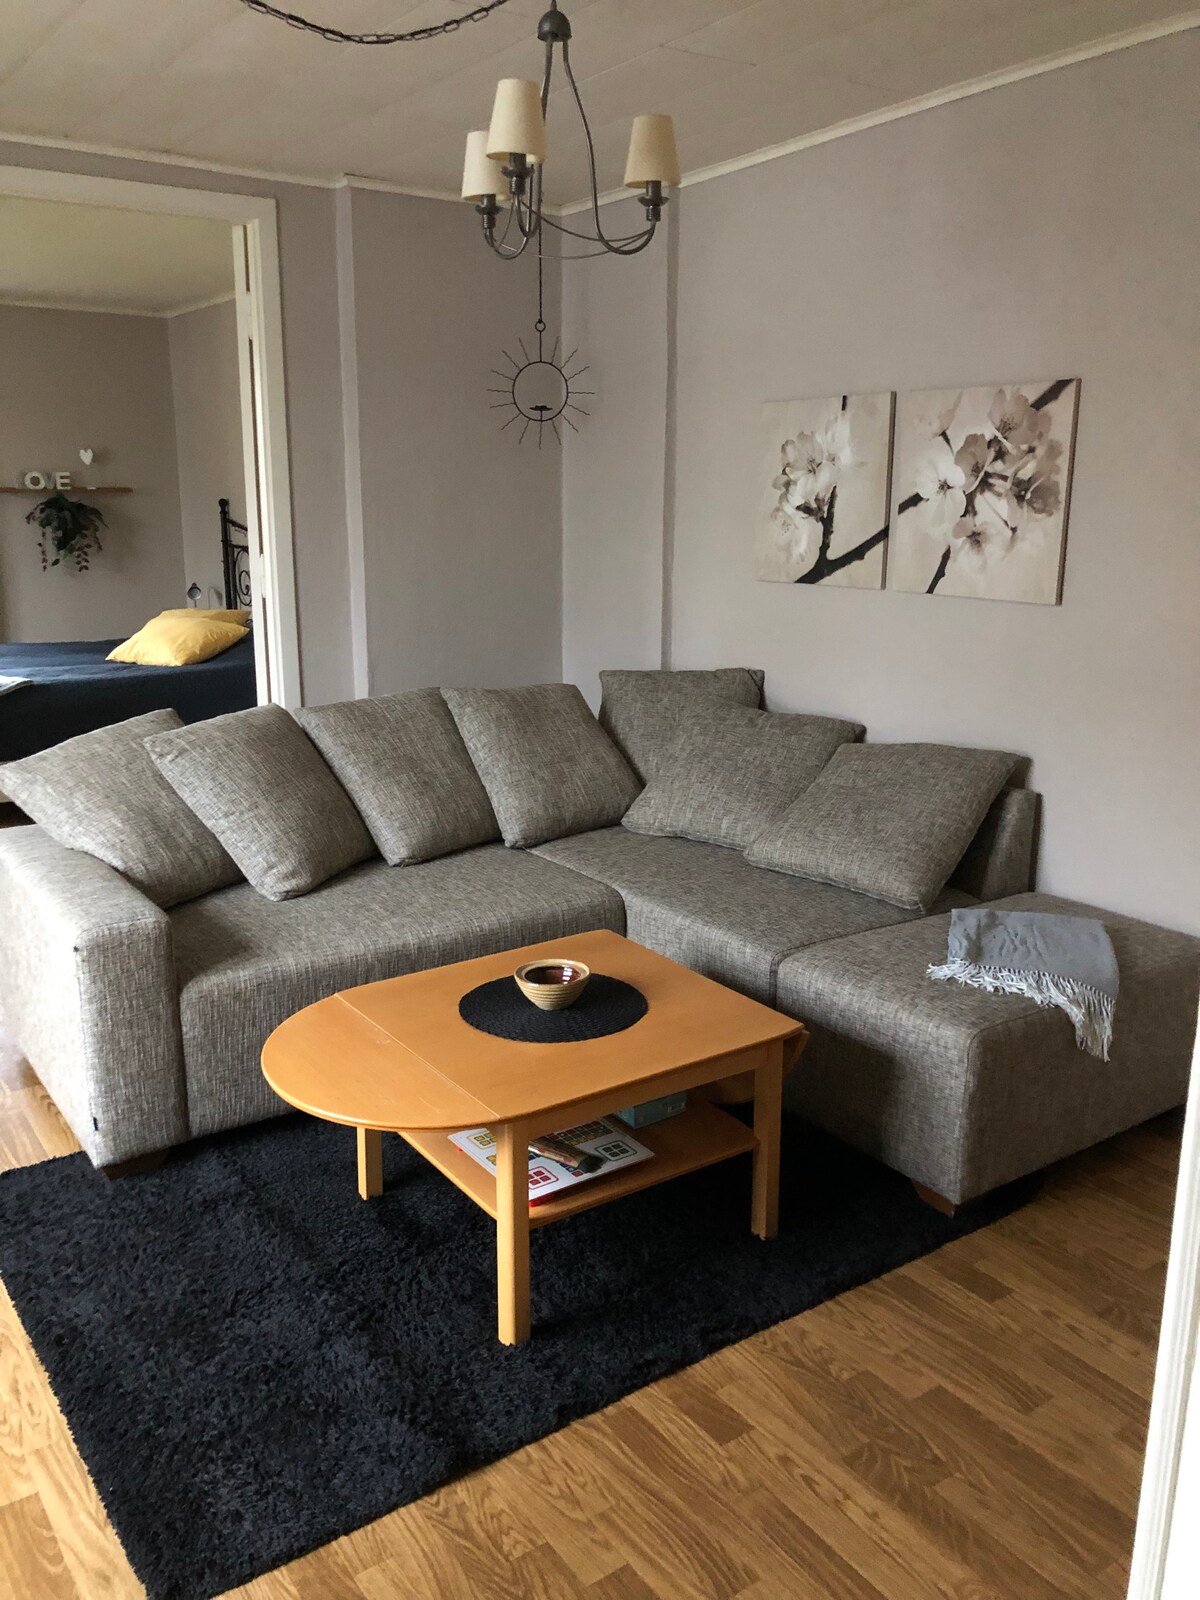 Lägenhet med 2 rum uthyres i Småland utmed E4:an